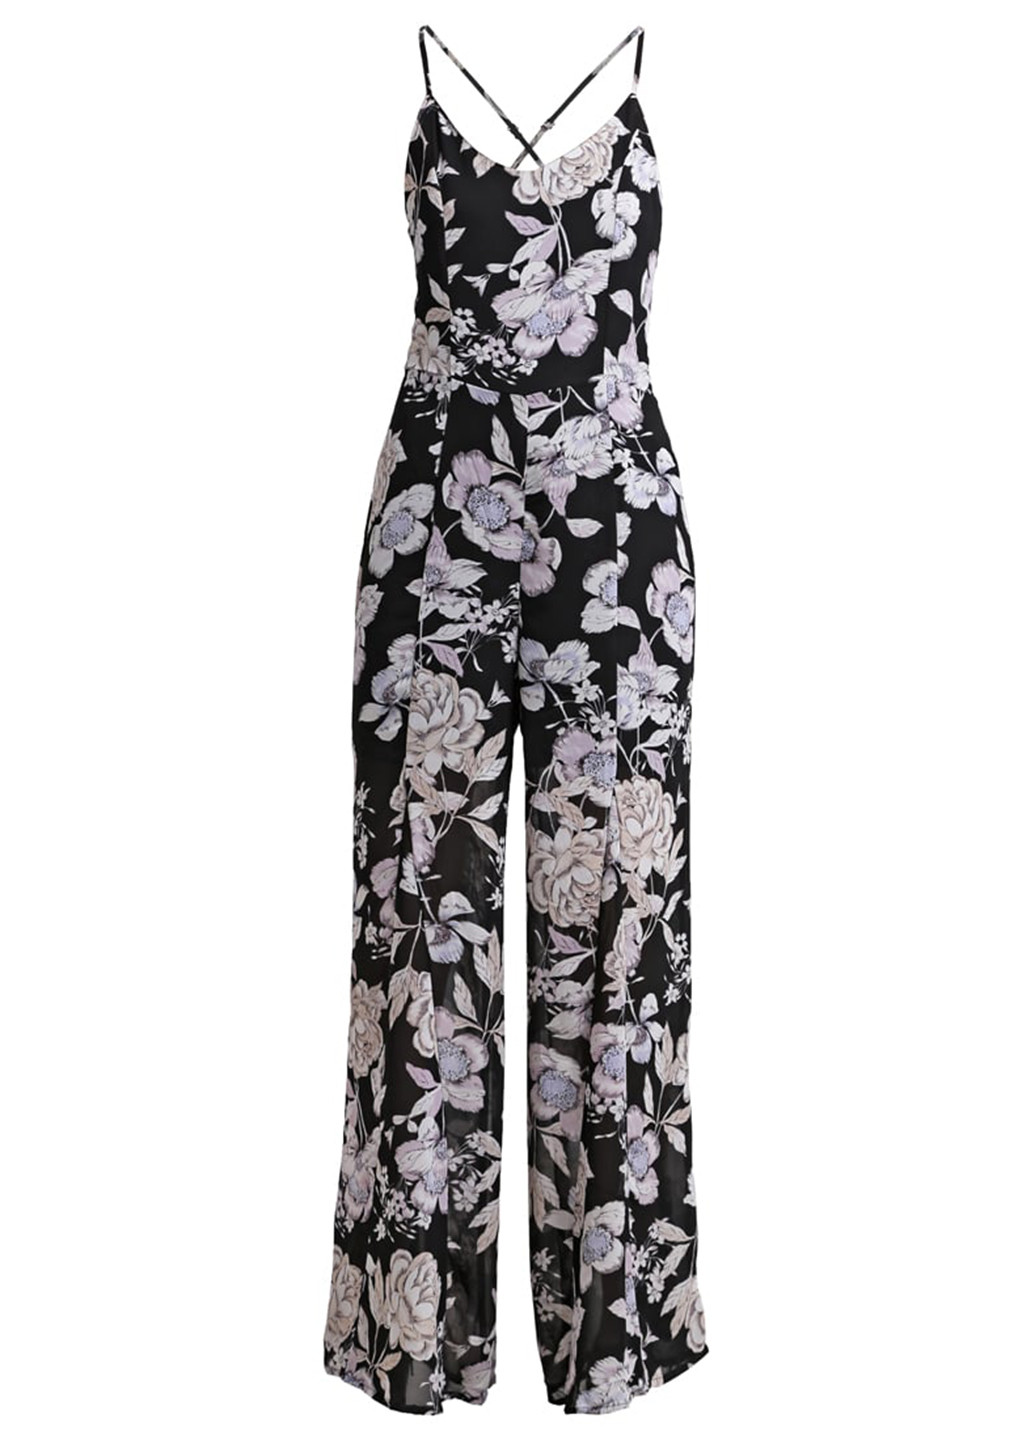 Комбинезон Glamorous комбинезон-брюки цветочный чёрный кэжуал полиэстер